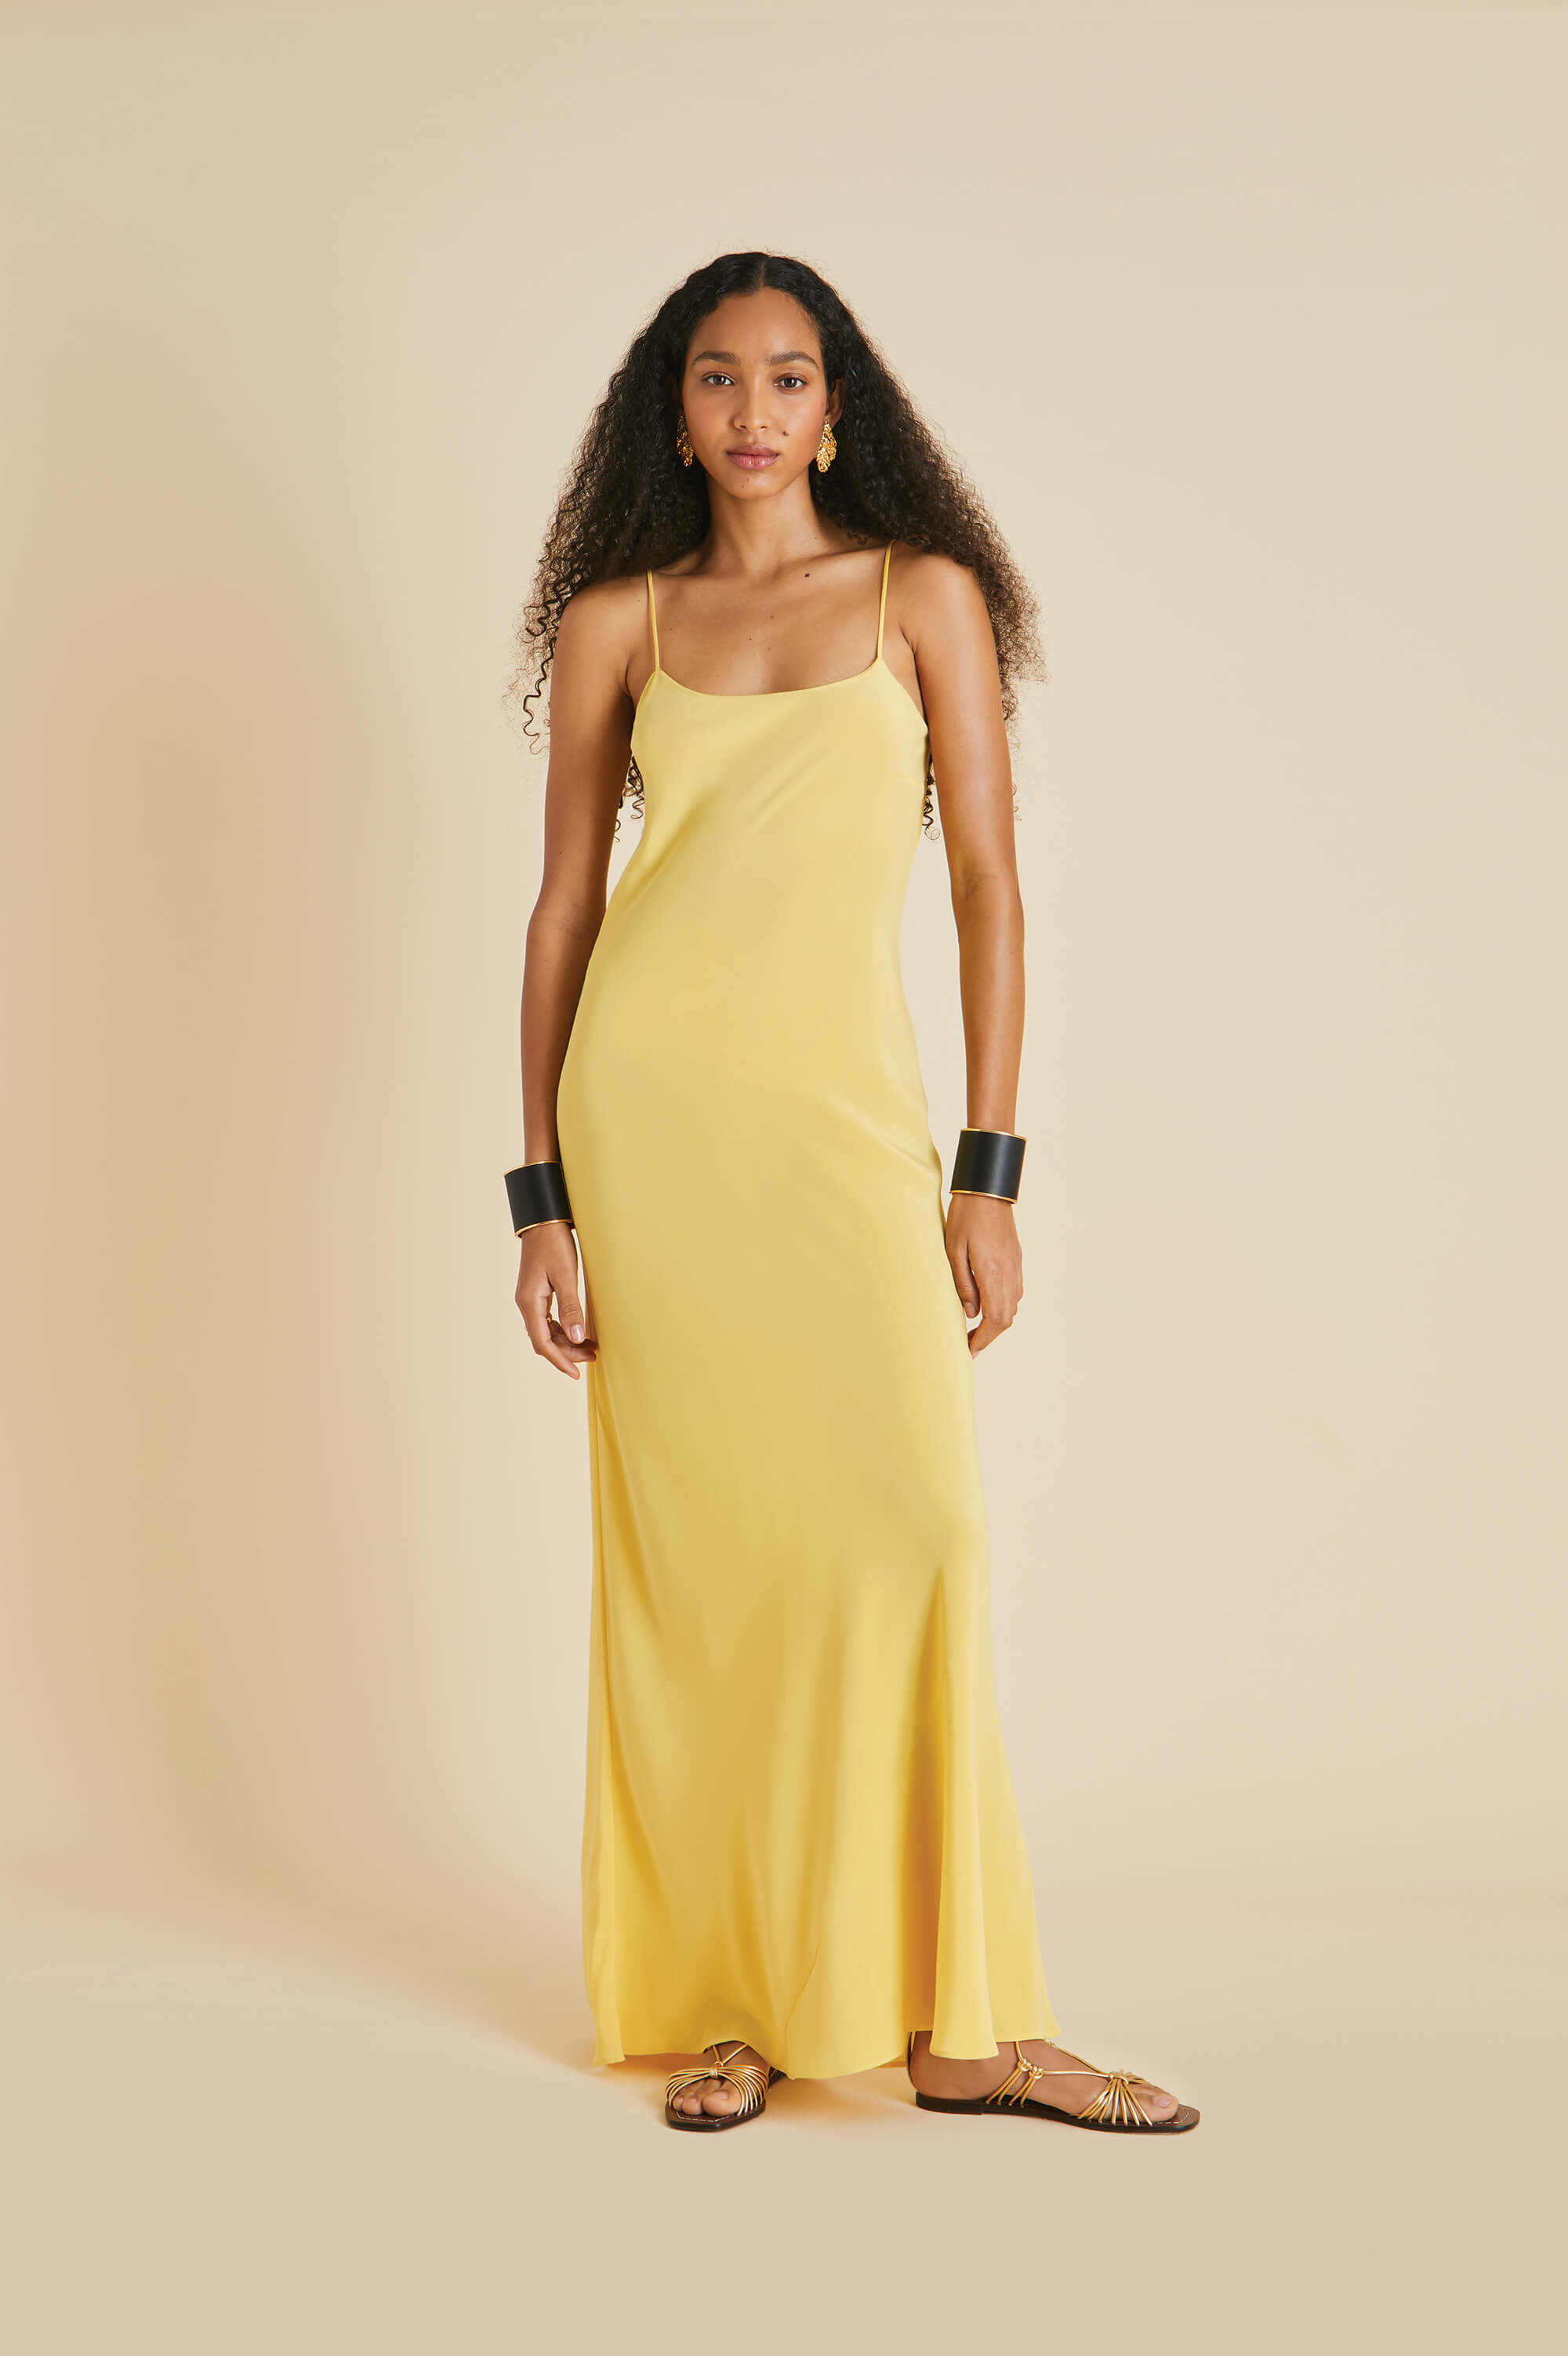 Olympia Yellow Slip Dress in Silk Crêpe de Chine